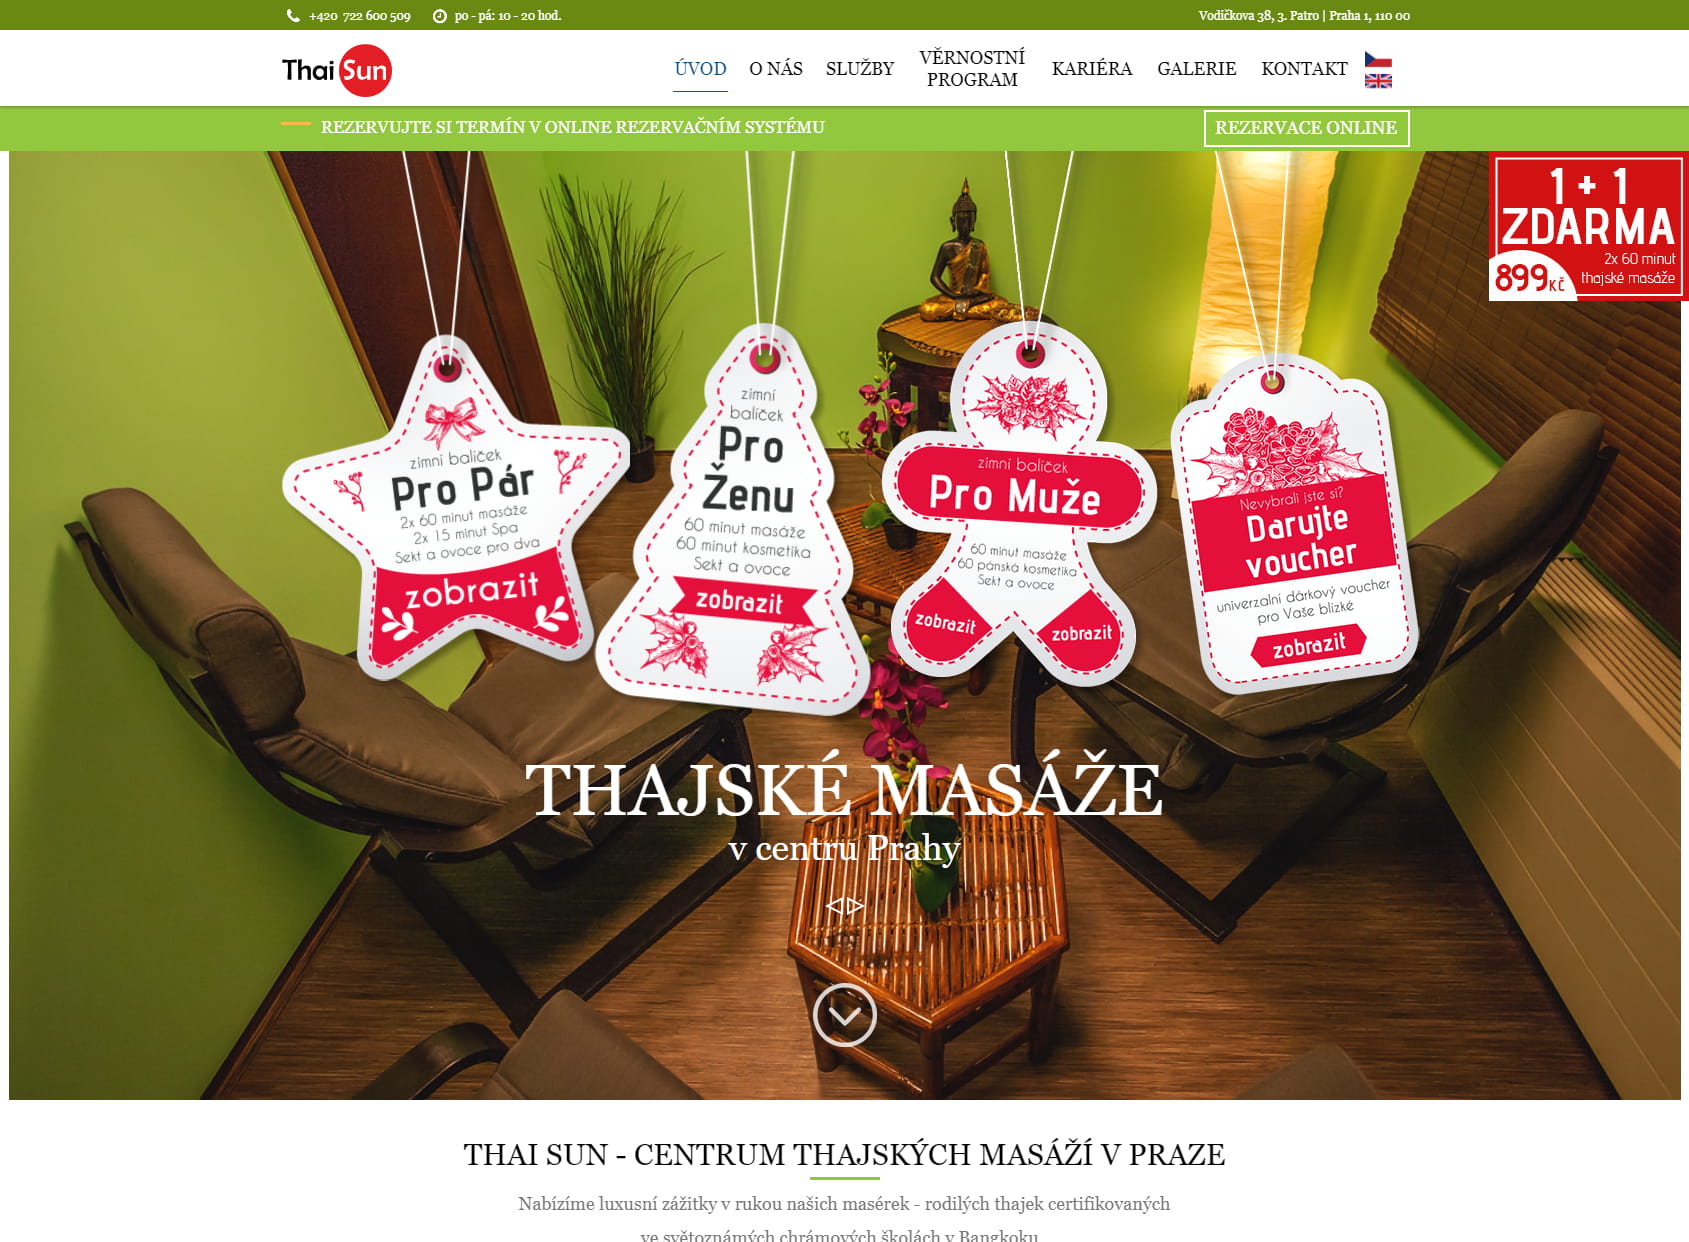 Thai massage center - Sun Thai, Thai massage Prague